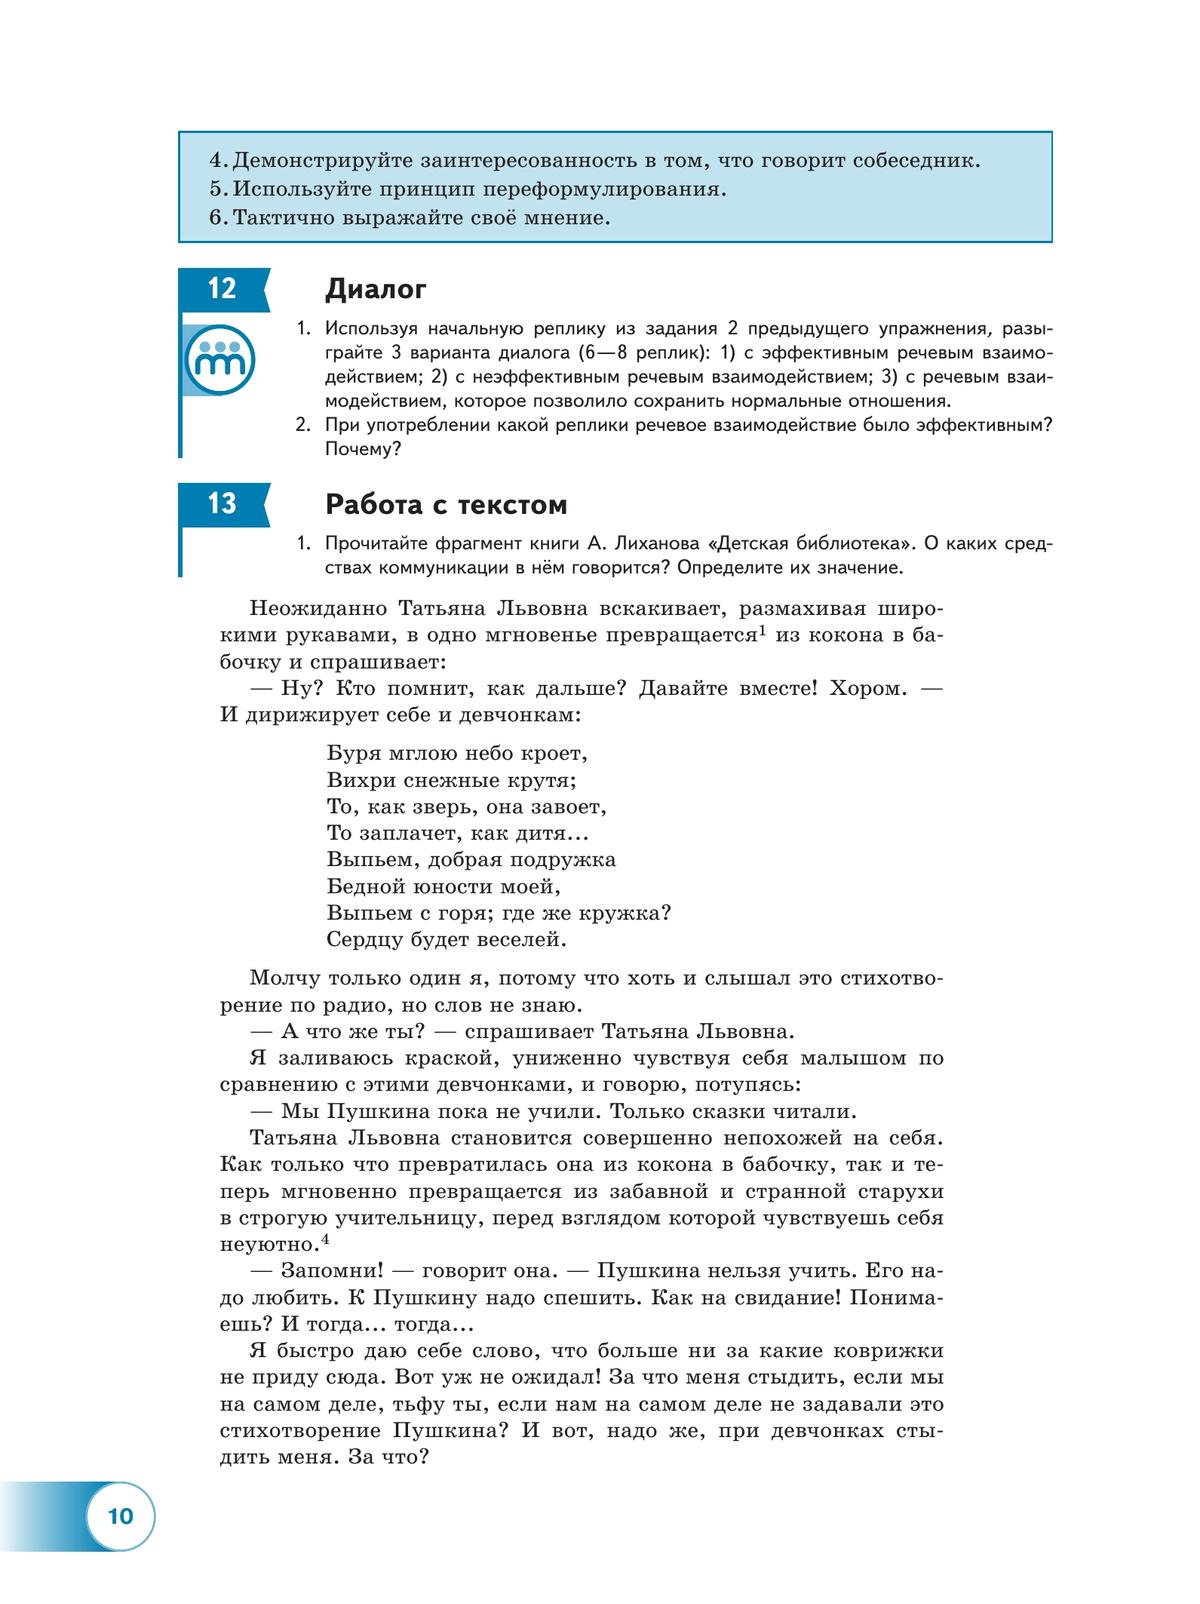 Русский язык. 10—11-е классы. Базовый уровень. В 2 частях. Часть 2. Учебное пособие 11